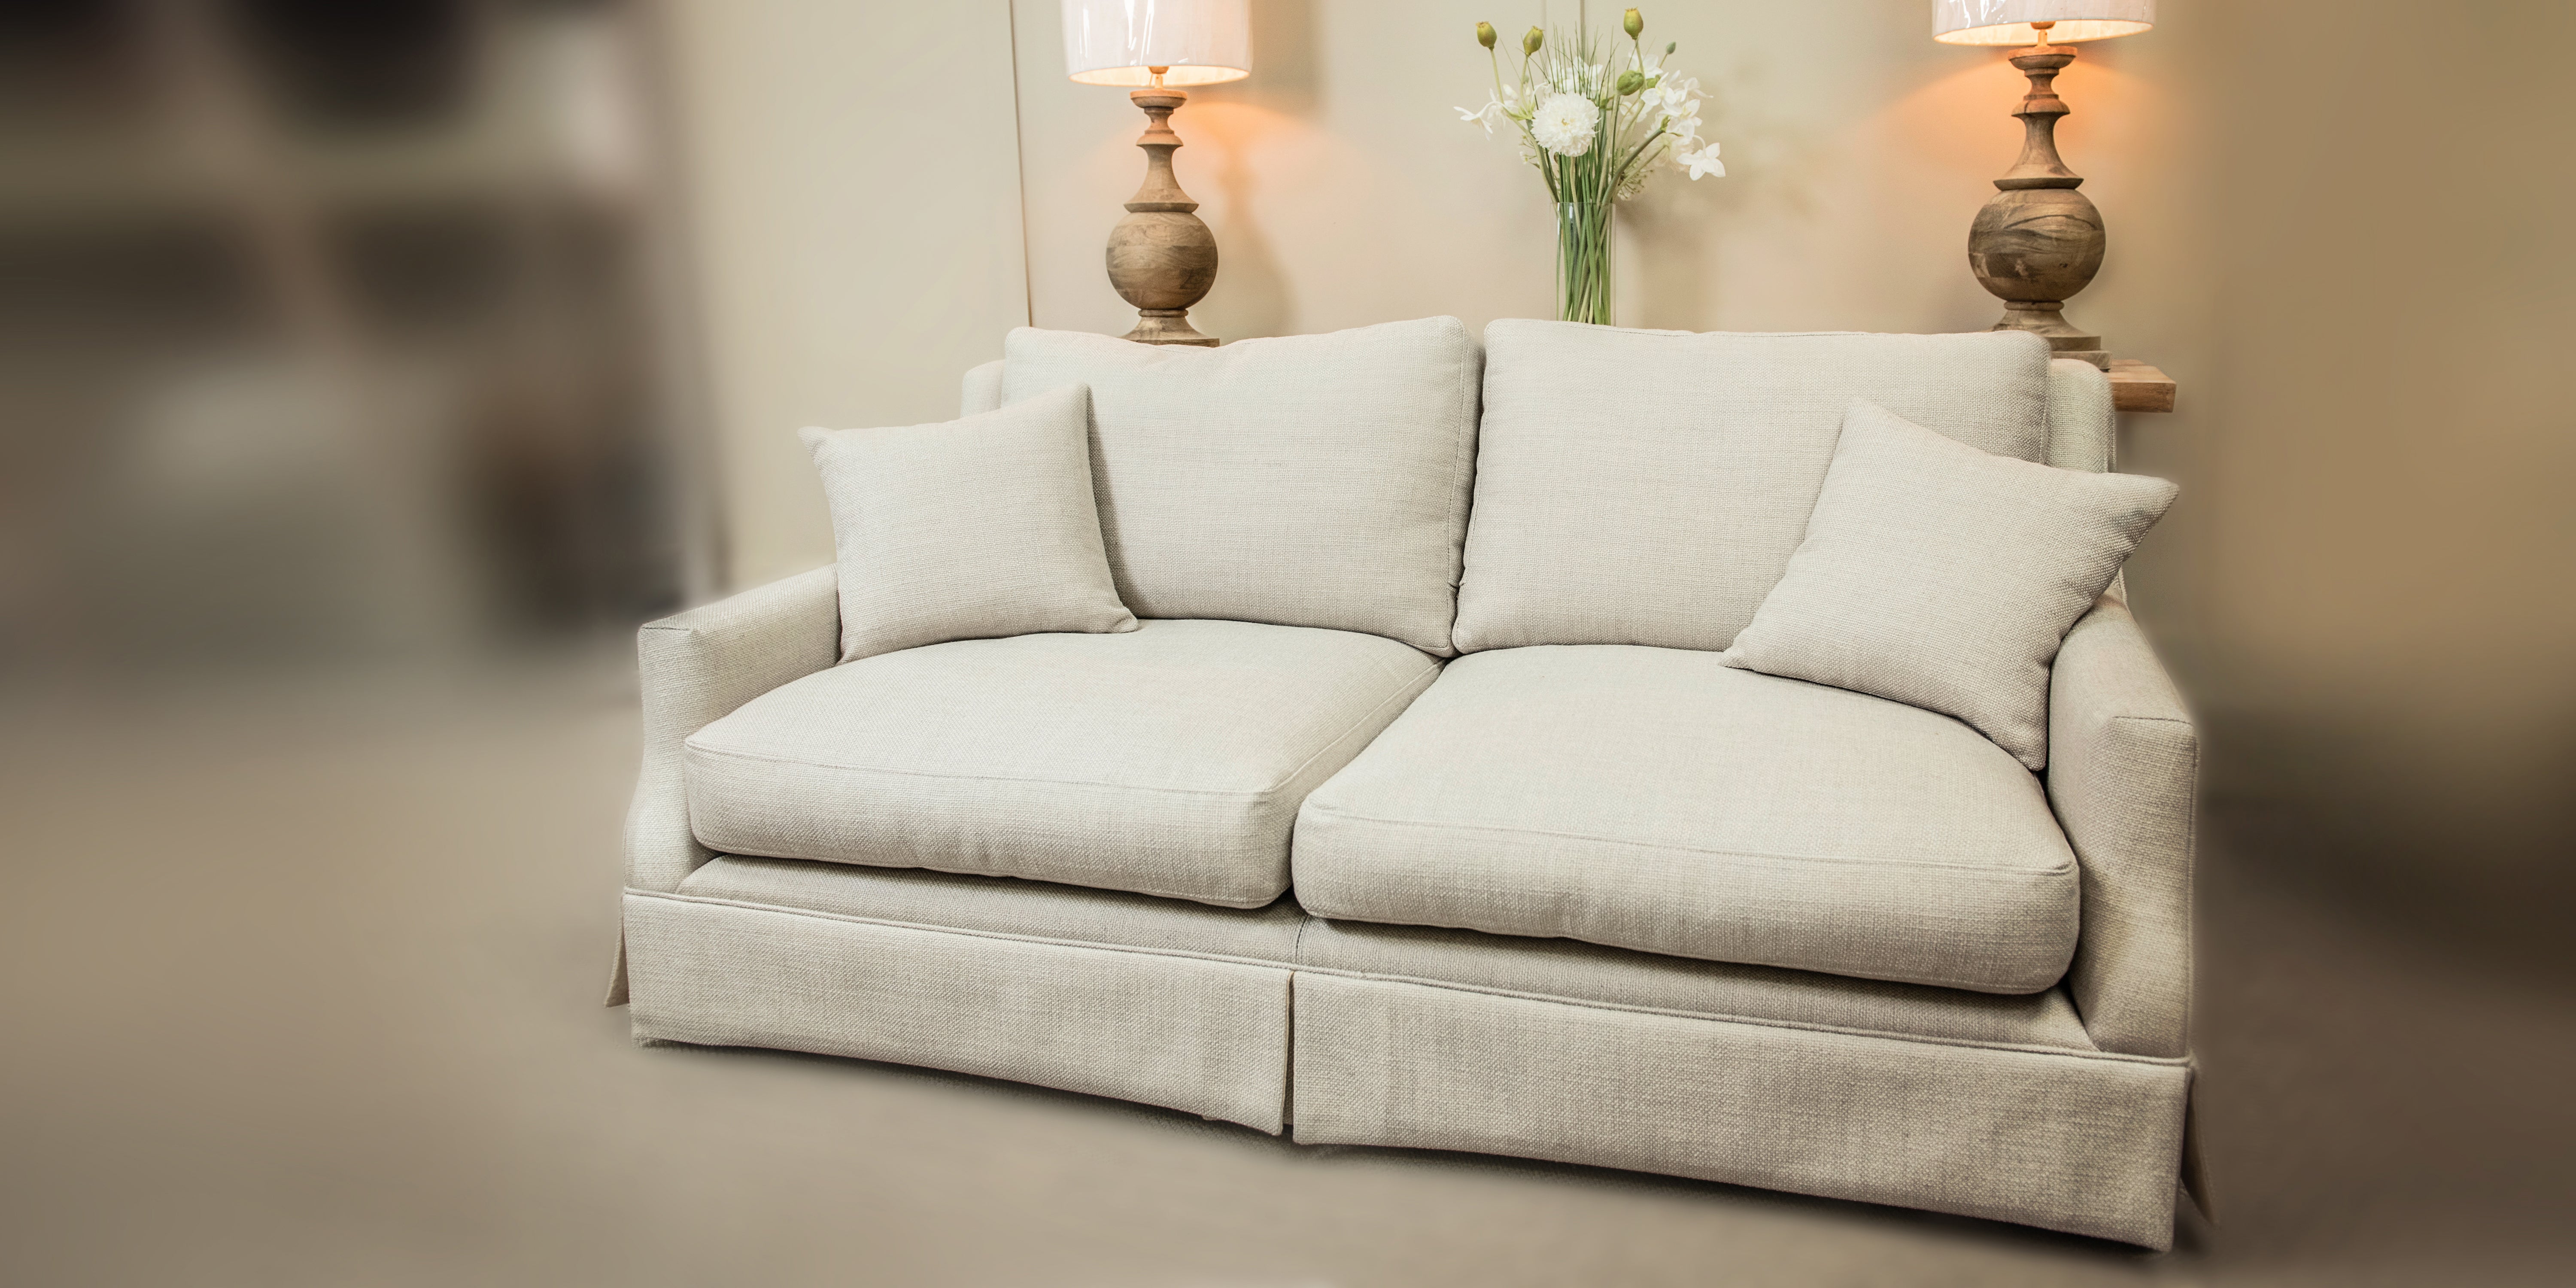 Elegant classic Sofa